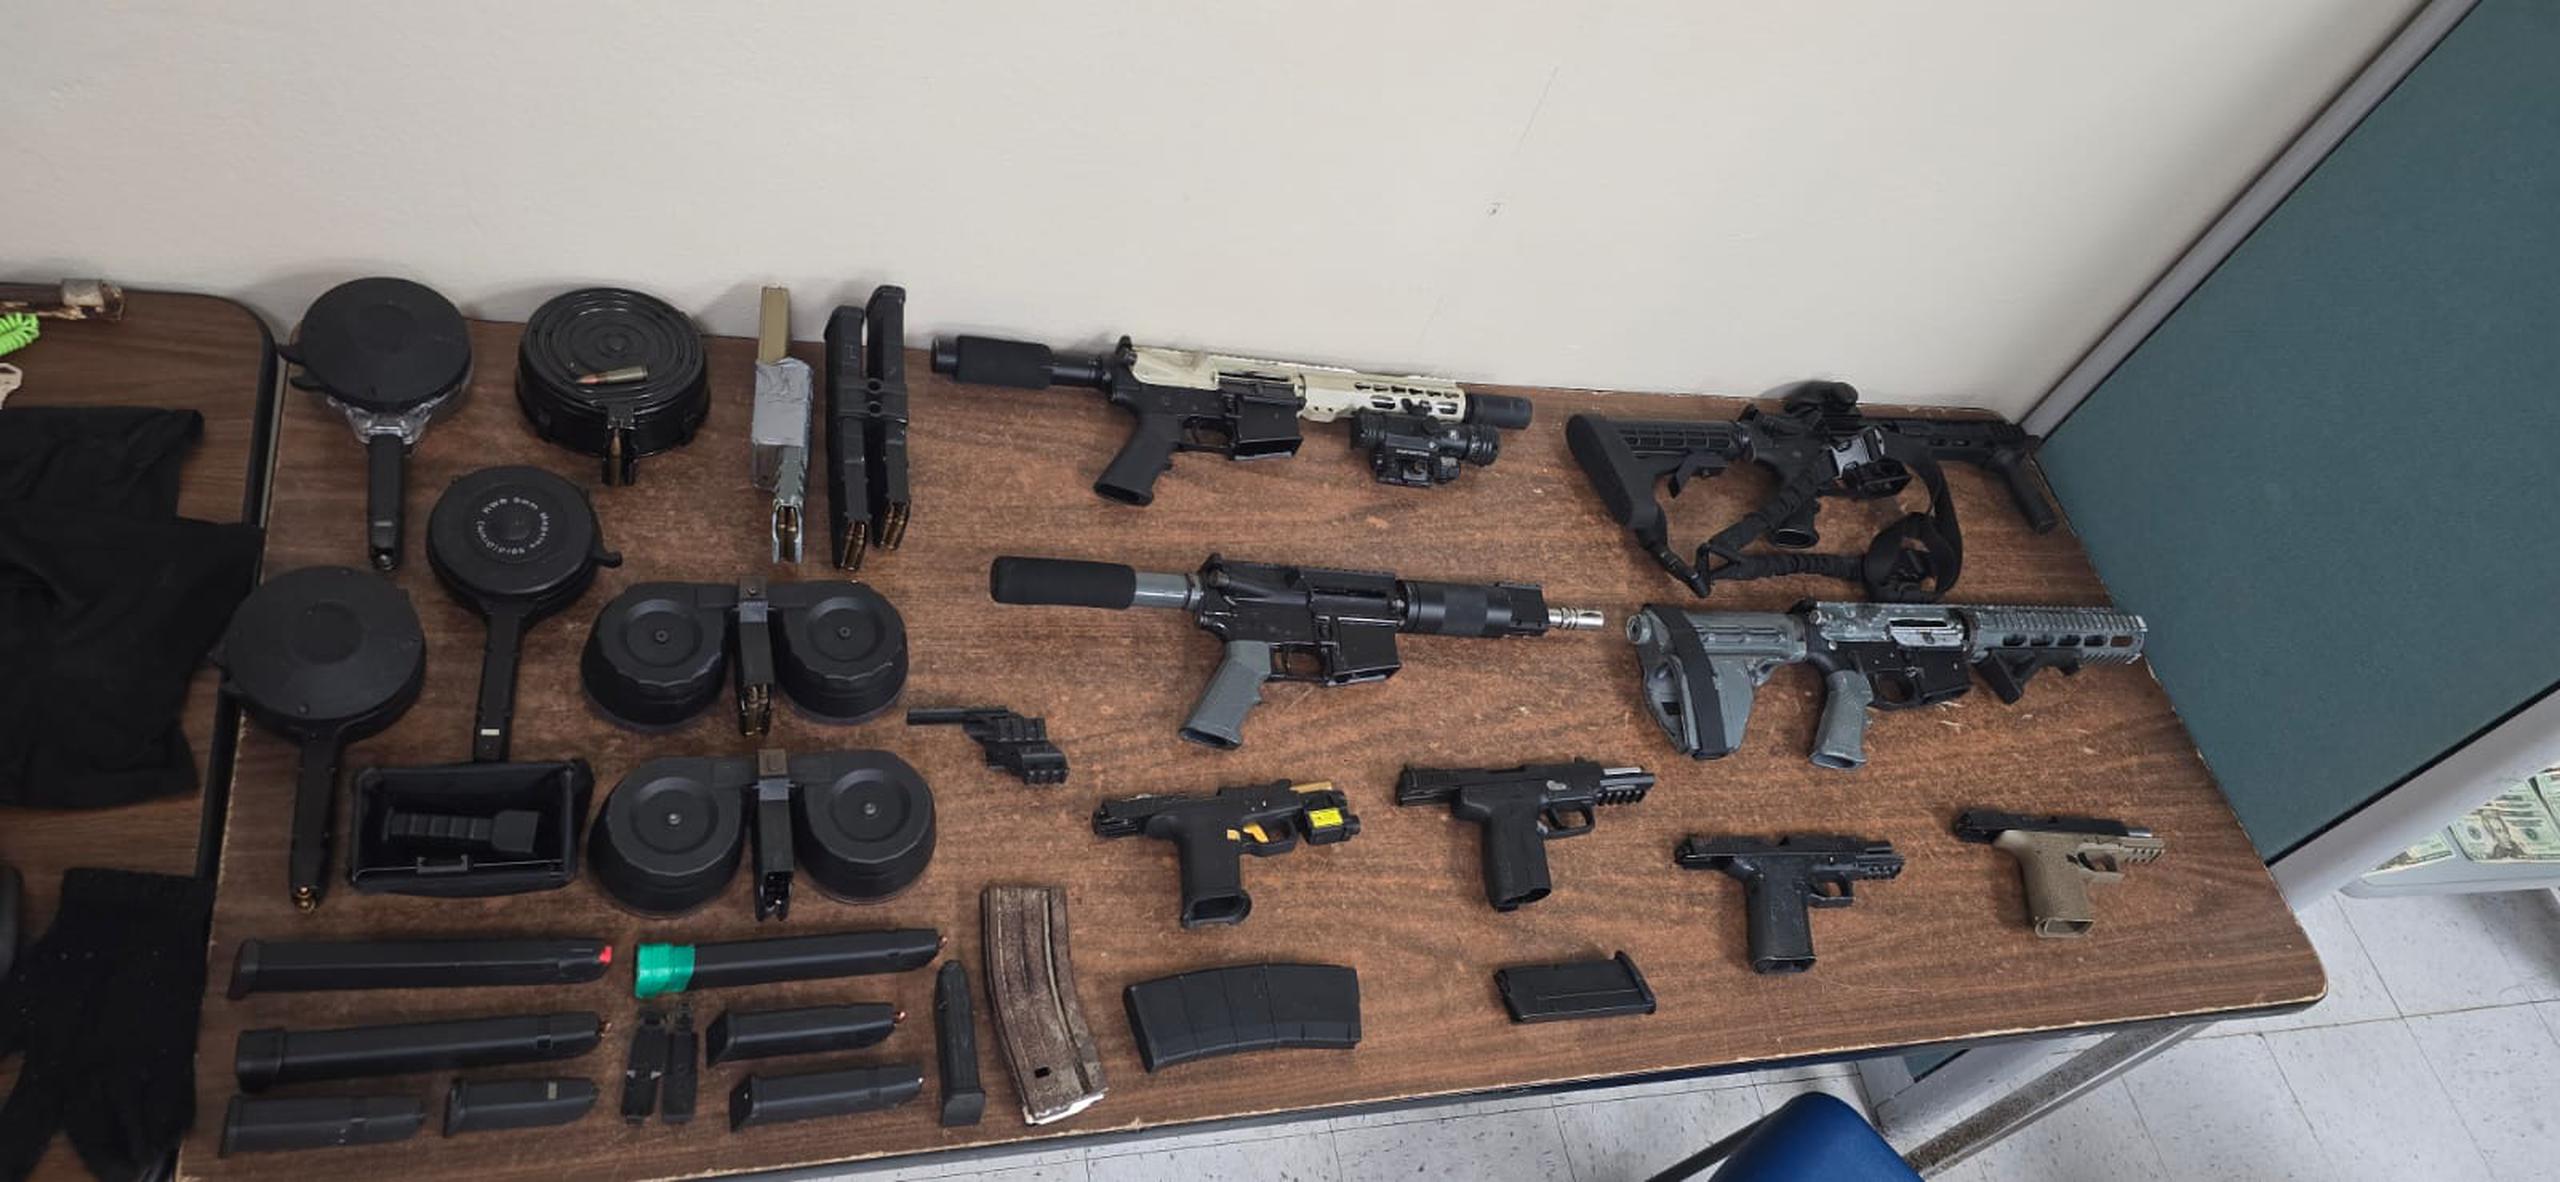 Armas ilegales y drogas ocupadas durante un allanamiento diligenciado en una residencia de la calle Simón Carlo del barrio Dulces Labios, en Mayagüez.